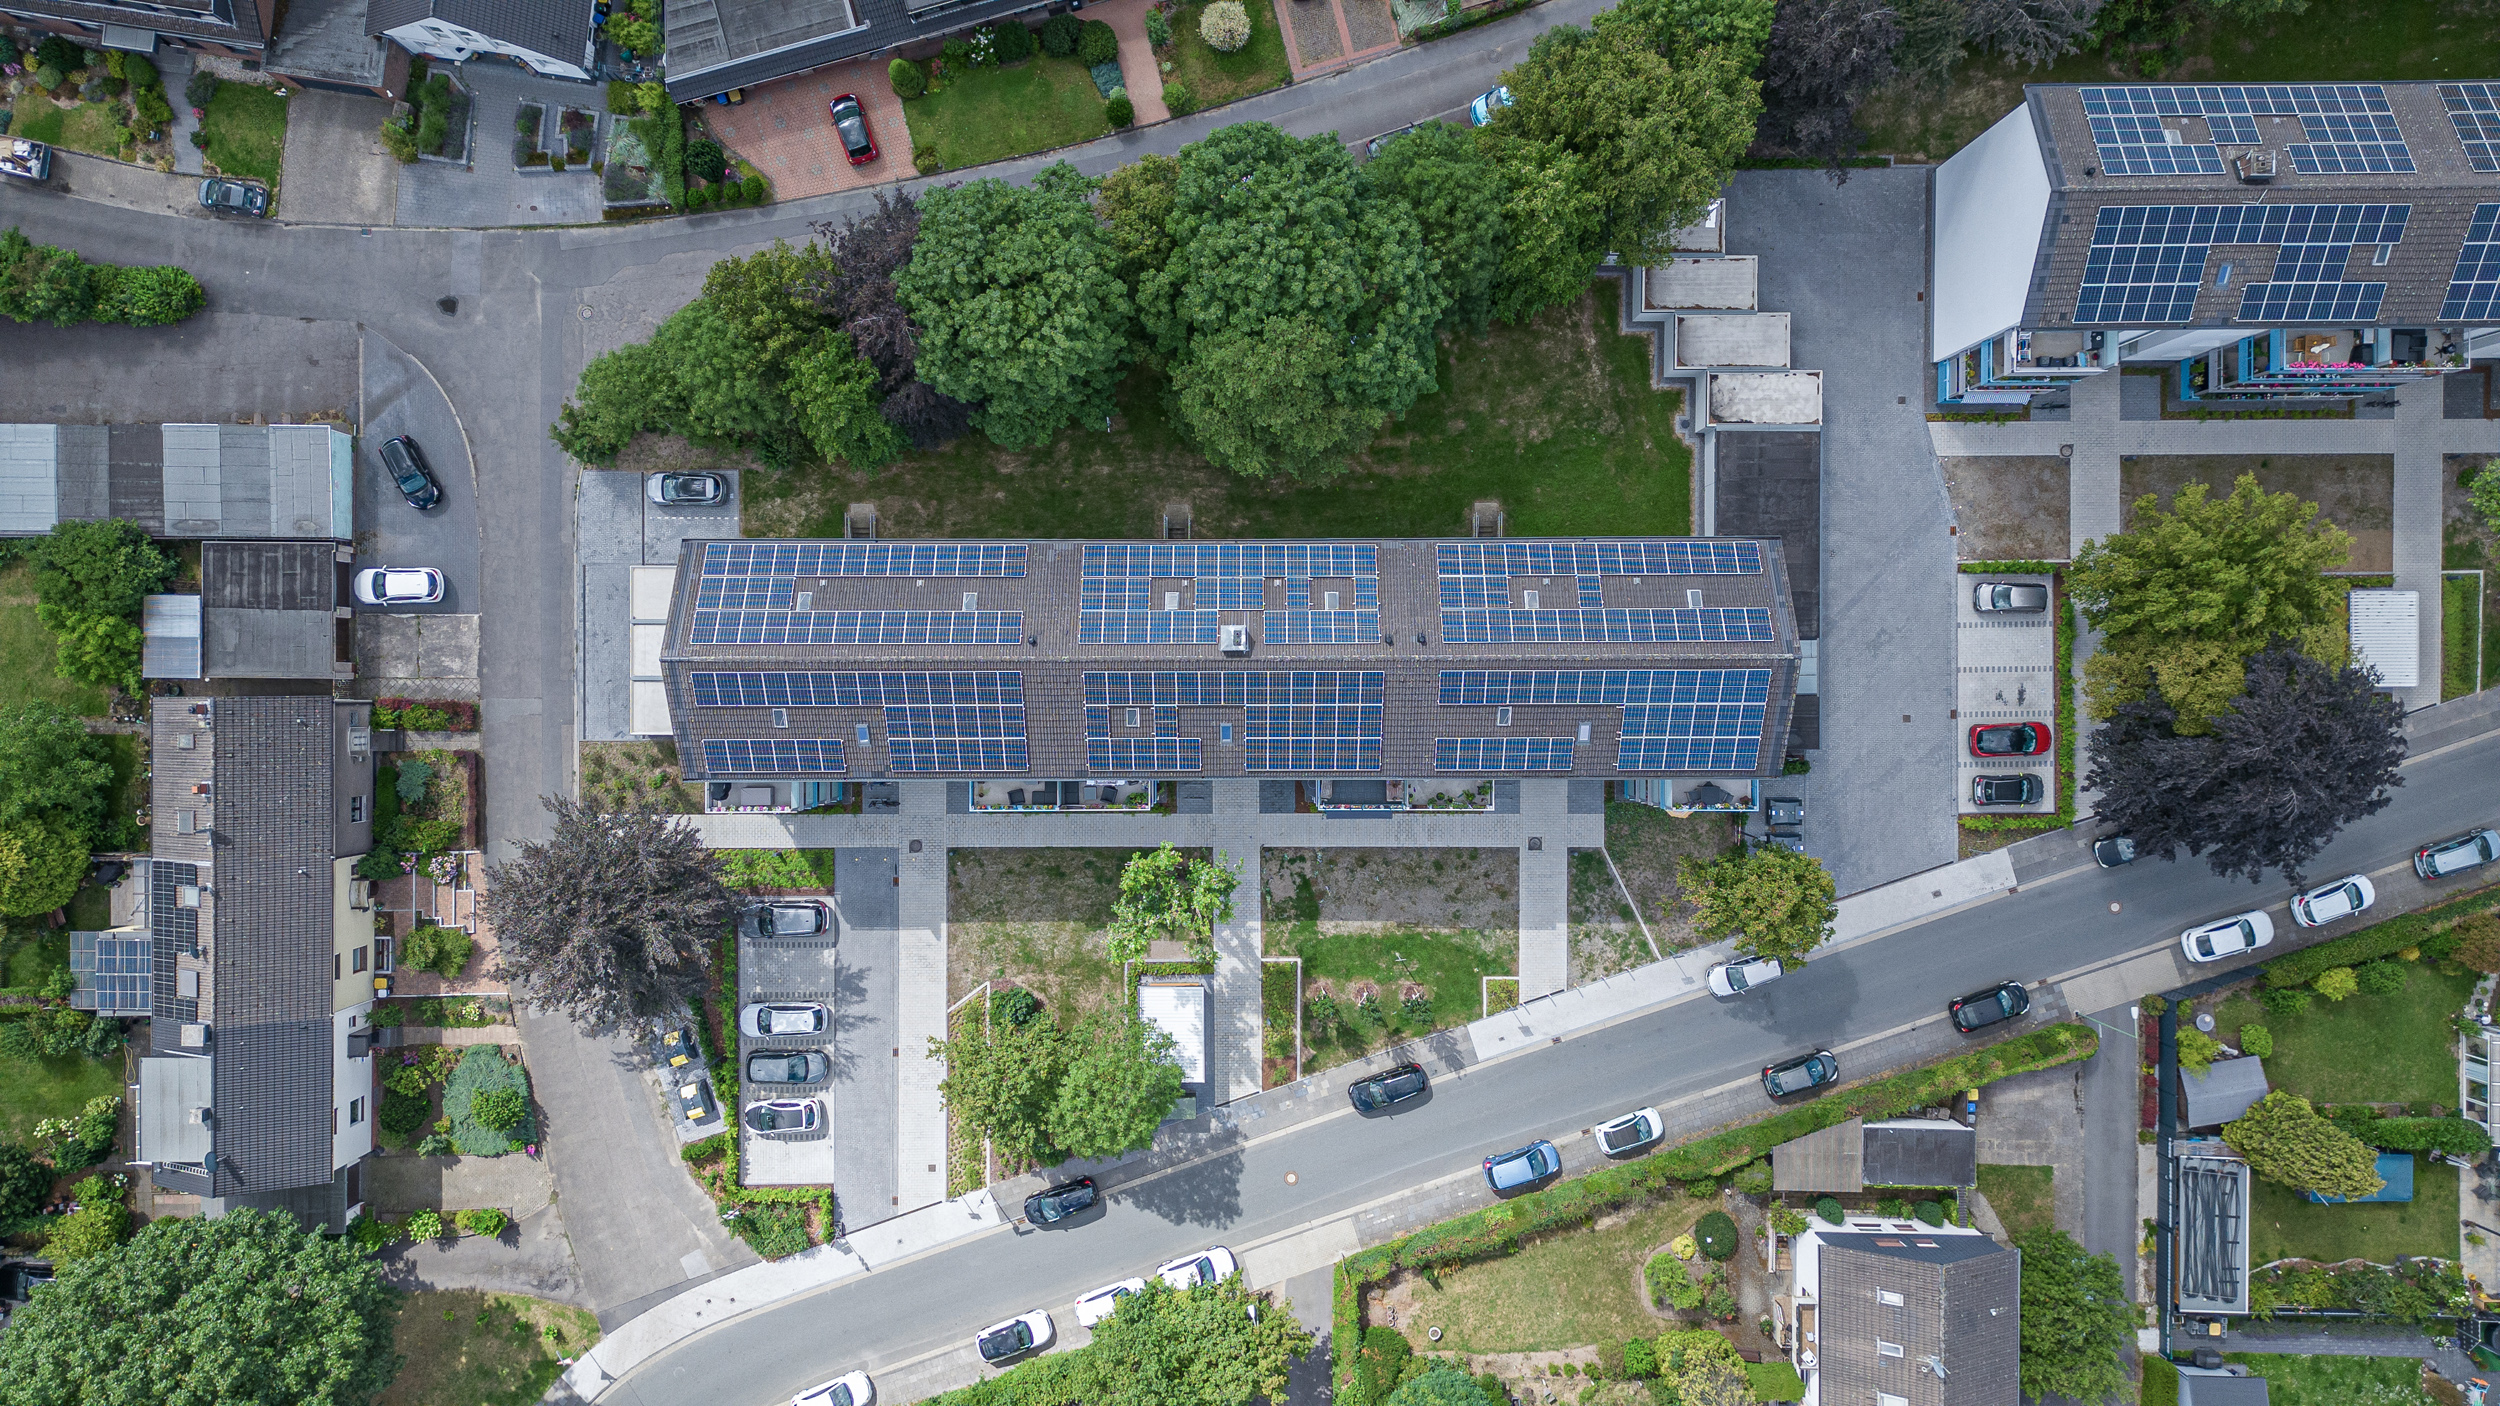 Abitazioni decarbonizzate con pompe di calore e impianti fotovoltaici - il quartiere di Duisburg-Ungelsheim